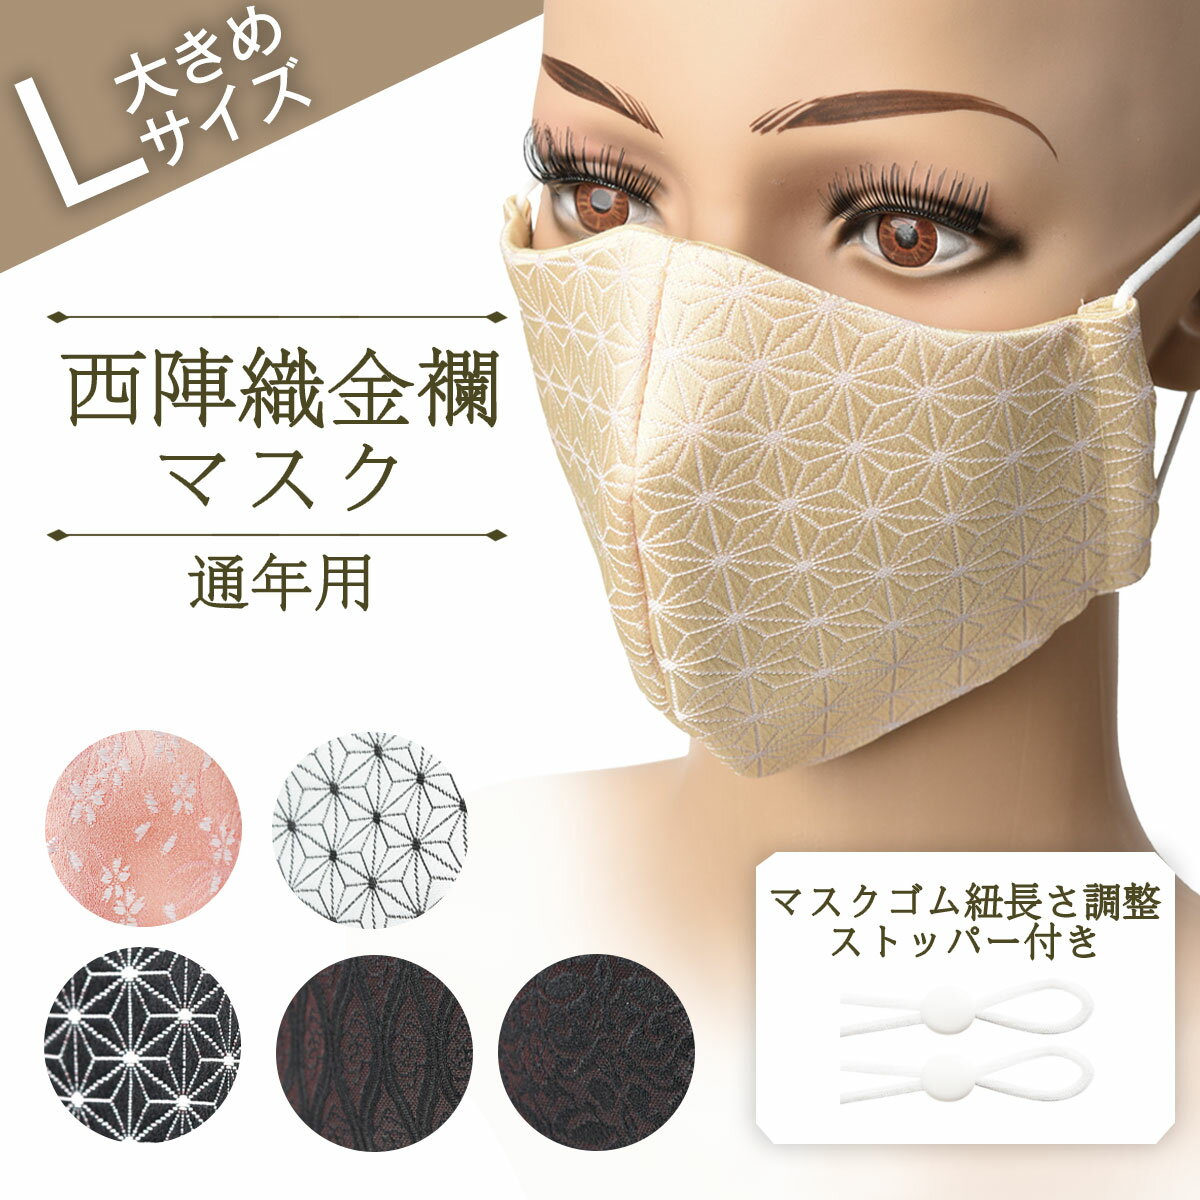 マスク 日本製 大きめ 大人用 西陣織マスク 布マスク 洗え